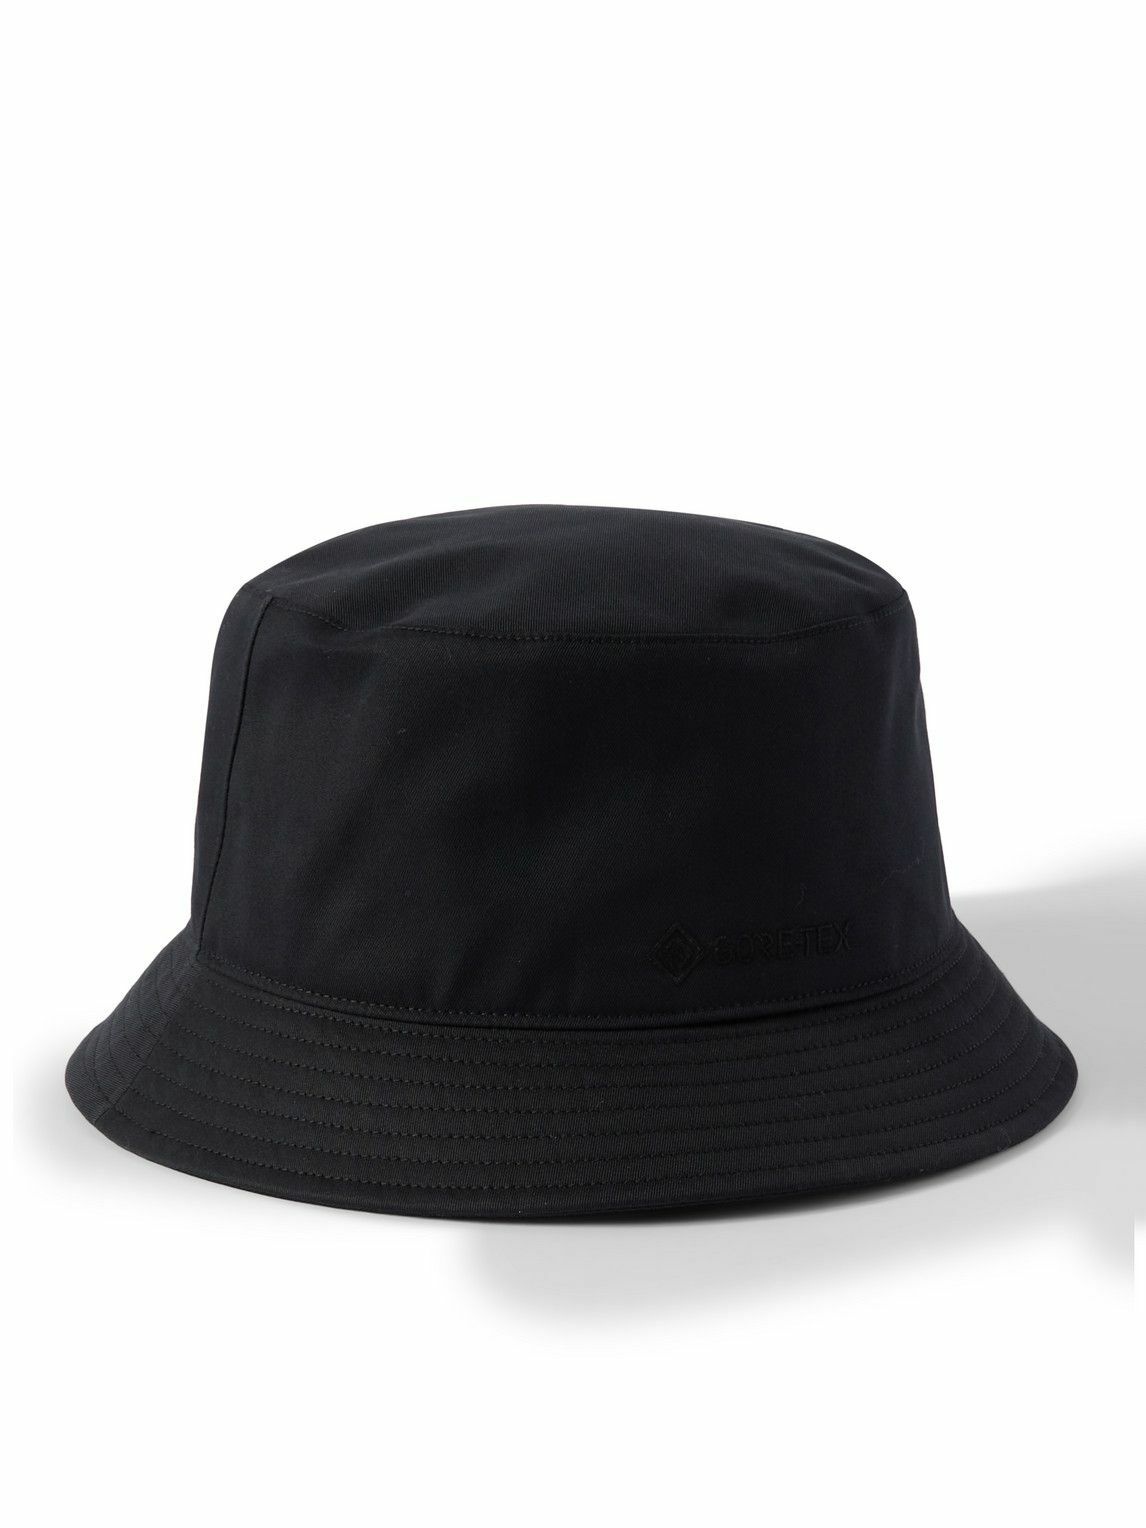 nanamica - GORE-TEX® Bucket Hat - Black Nanamica